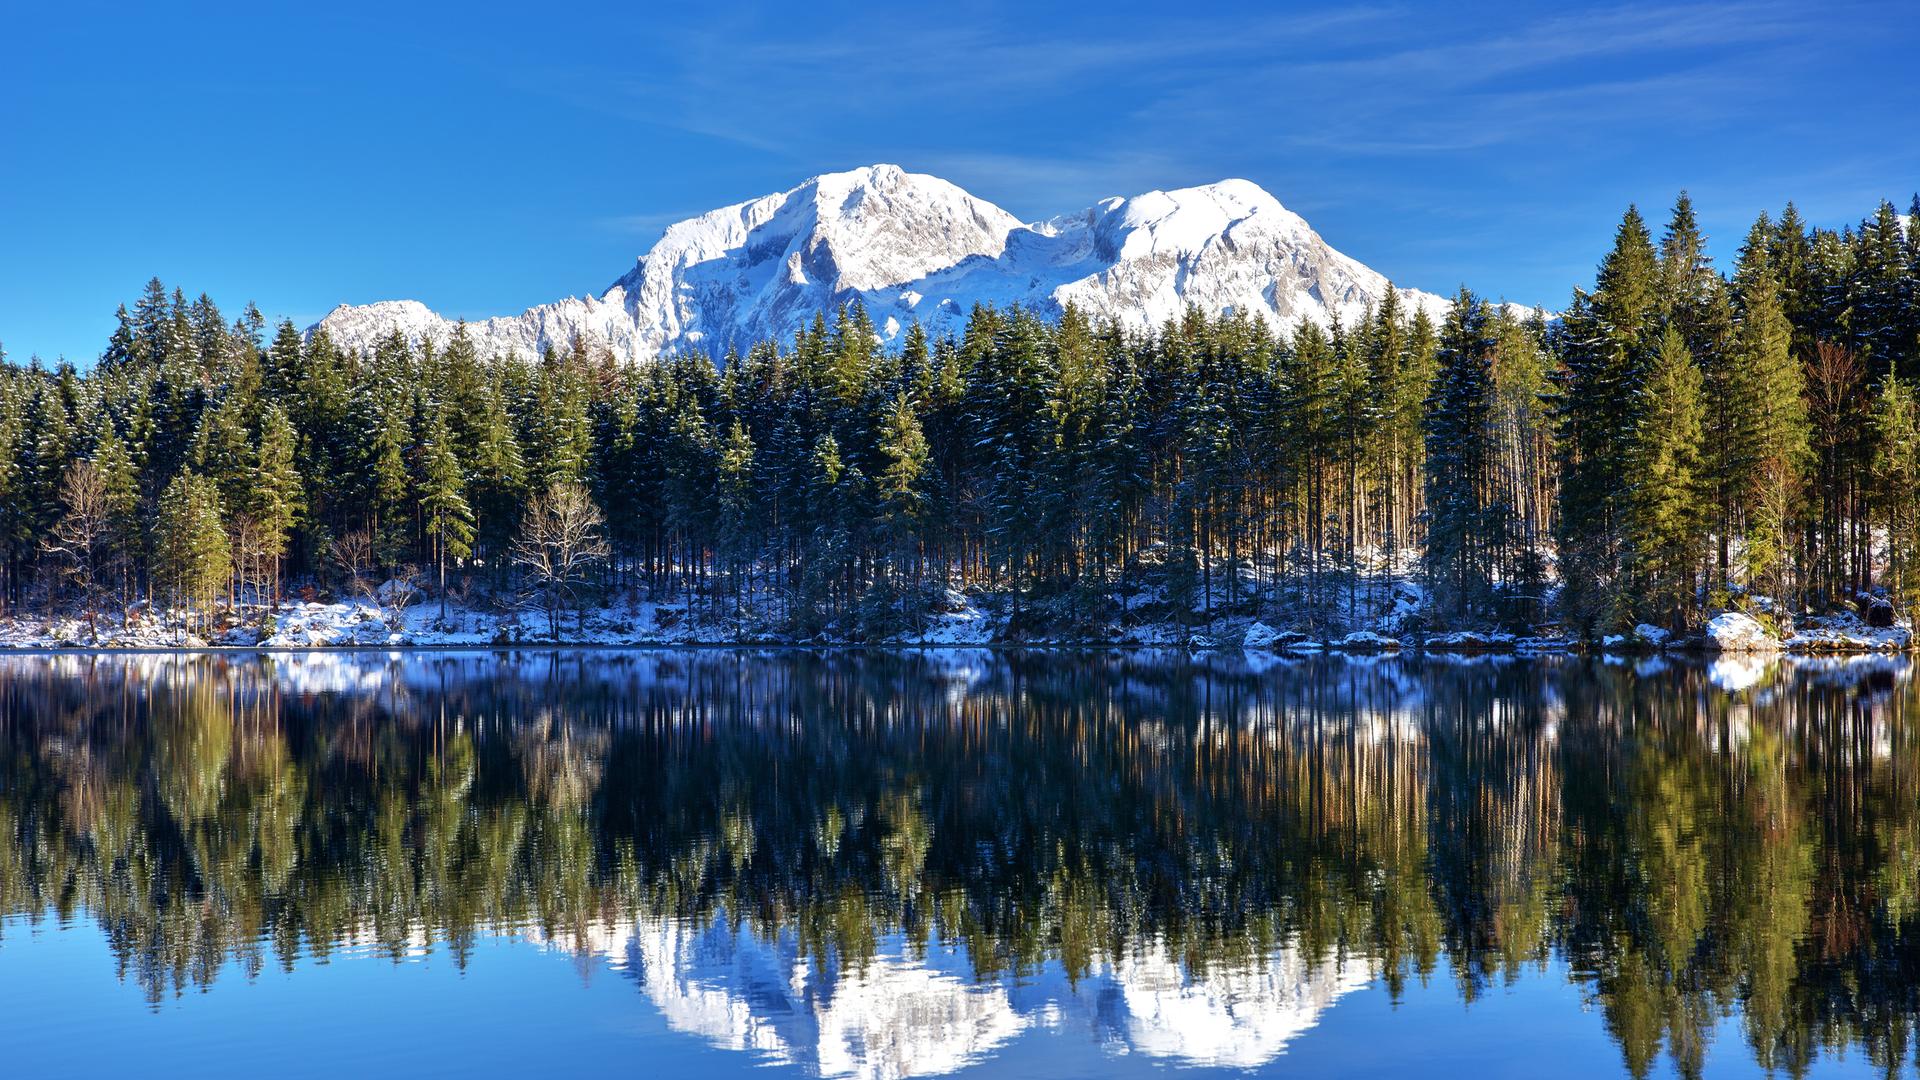 Ein Foto von einem klaren See, in dem sich Bäume spiegeln. Im Hintergrund ist ein Berg mit Schneekuppe zu sehen.